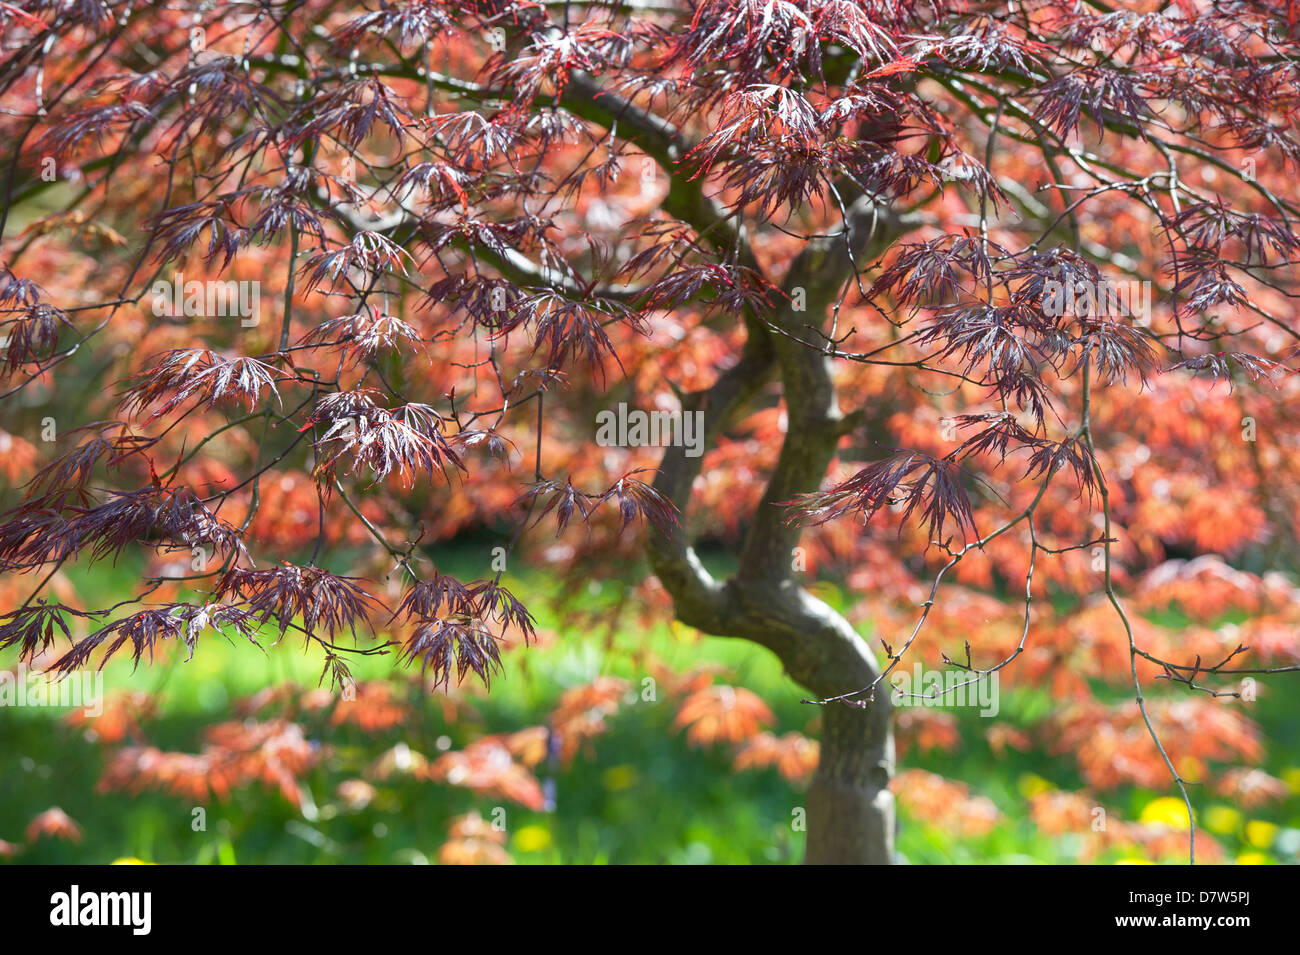 Acer Palmatum Inaba Shida. Japanese maple tree Stock Photo